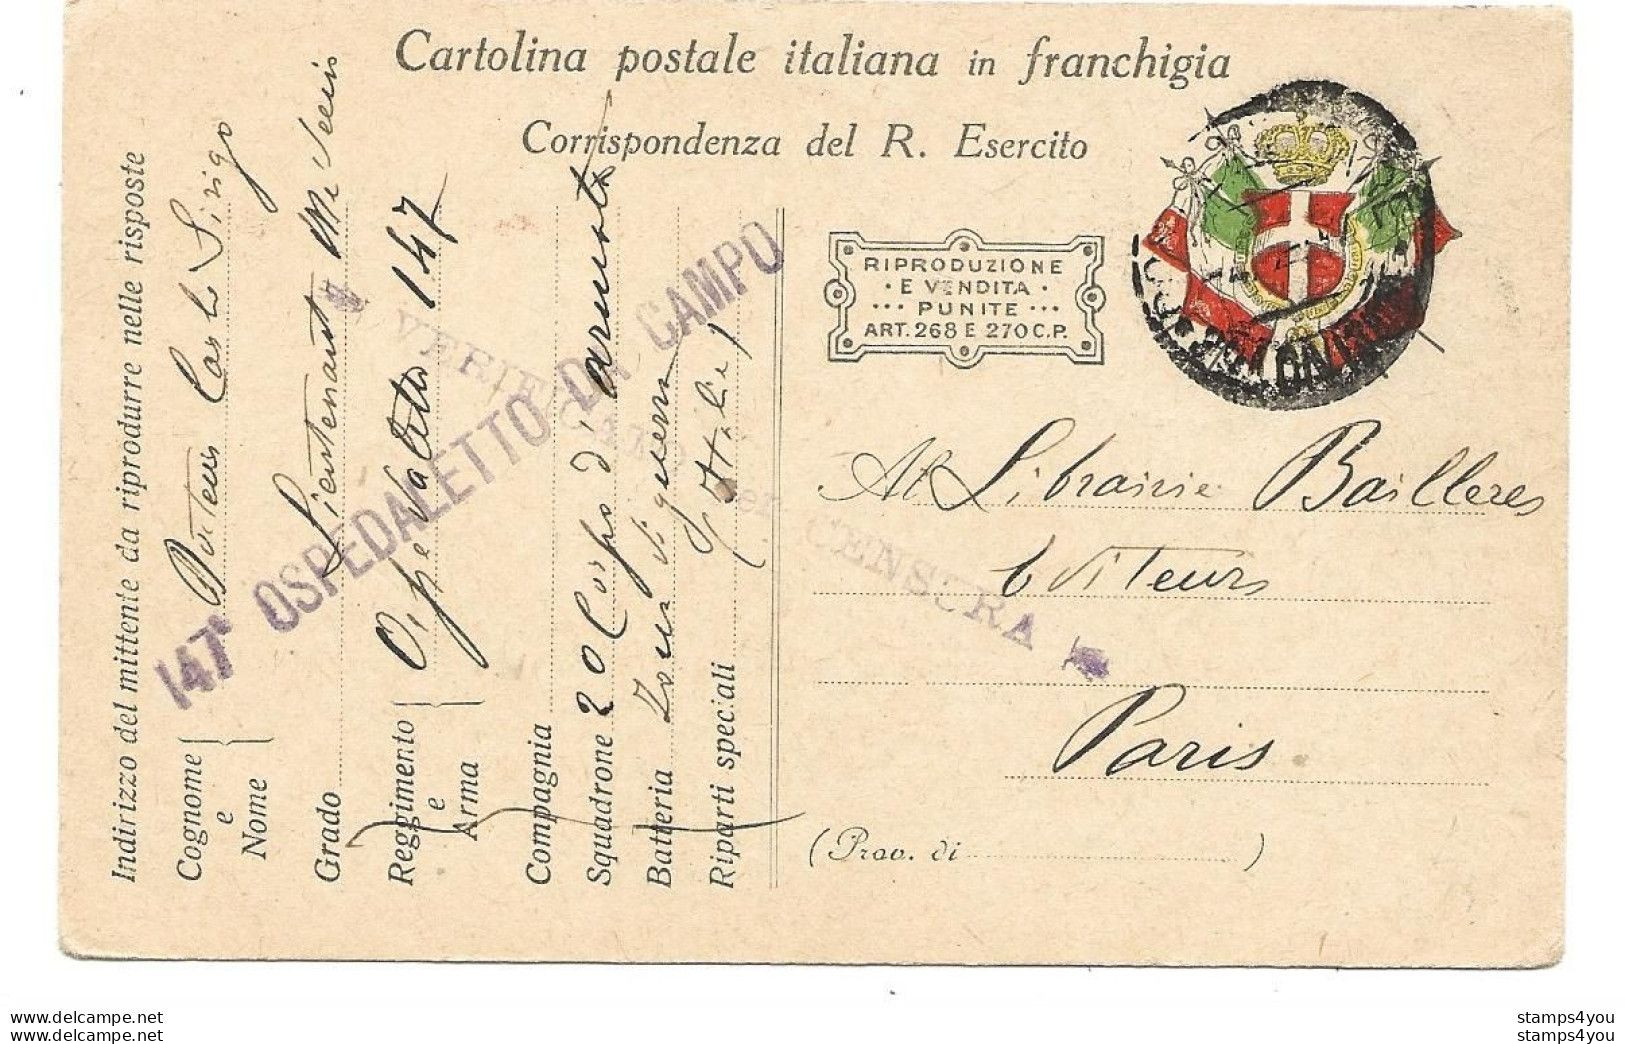 221 - 101 - Carte Militaire Italienne Envoyée à Paris 1917 - Censure - Prima Guerra Mondiale